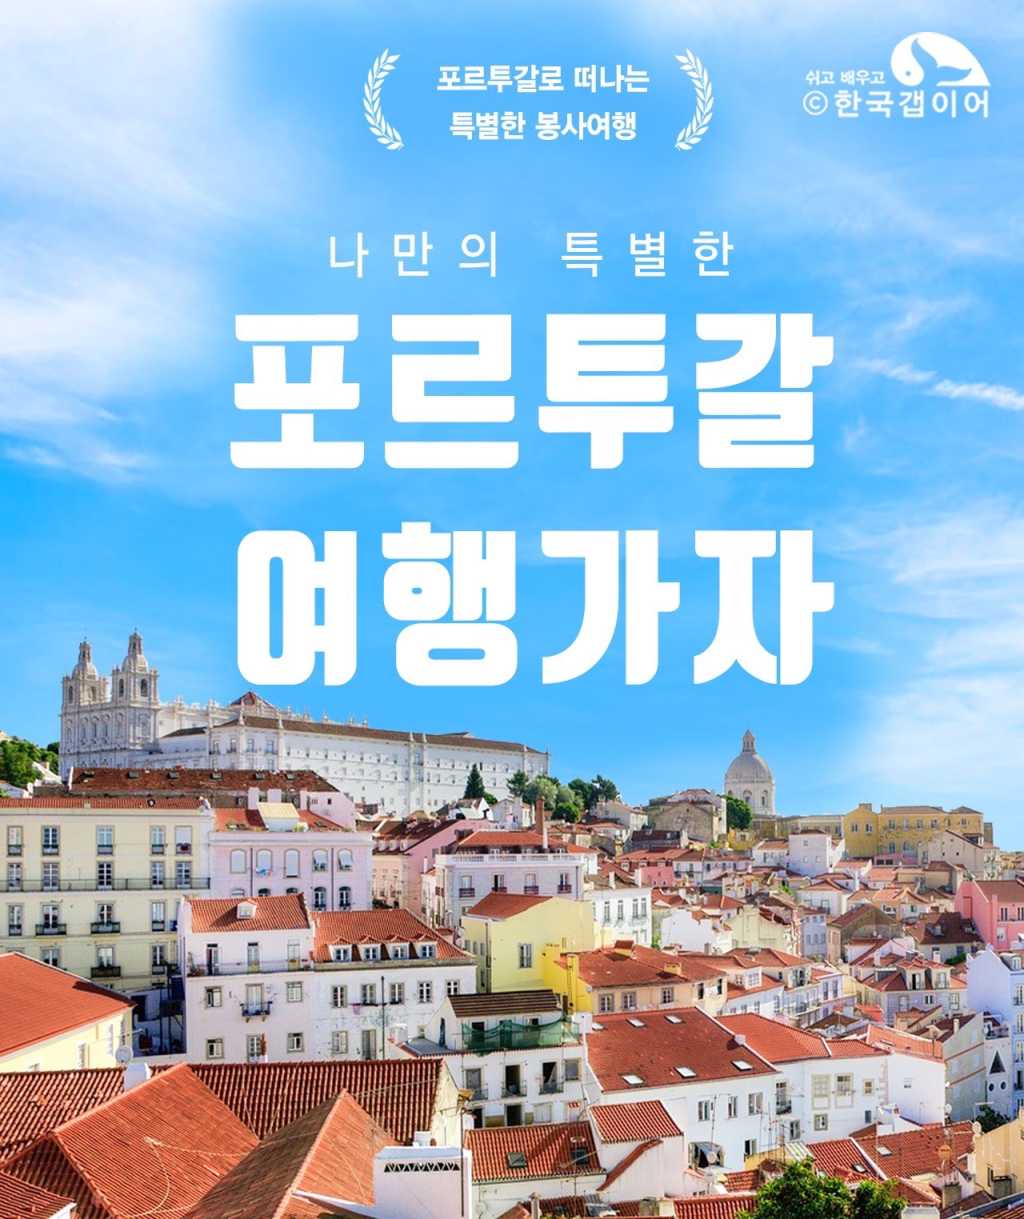 포르투갈 해외봉사여행! 세계에서 가장 아름다운 지역, 포르투갈 리스본에서 보내는 특별한 봉사여행!